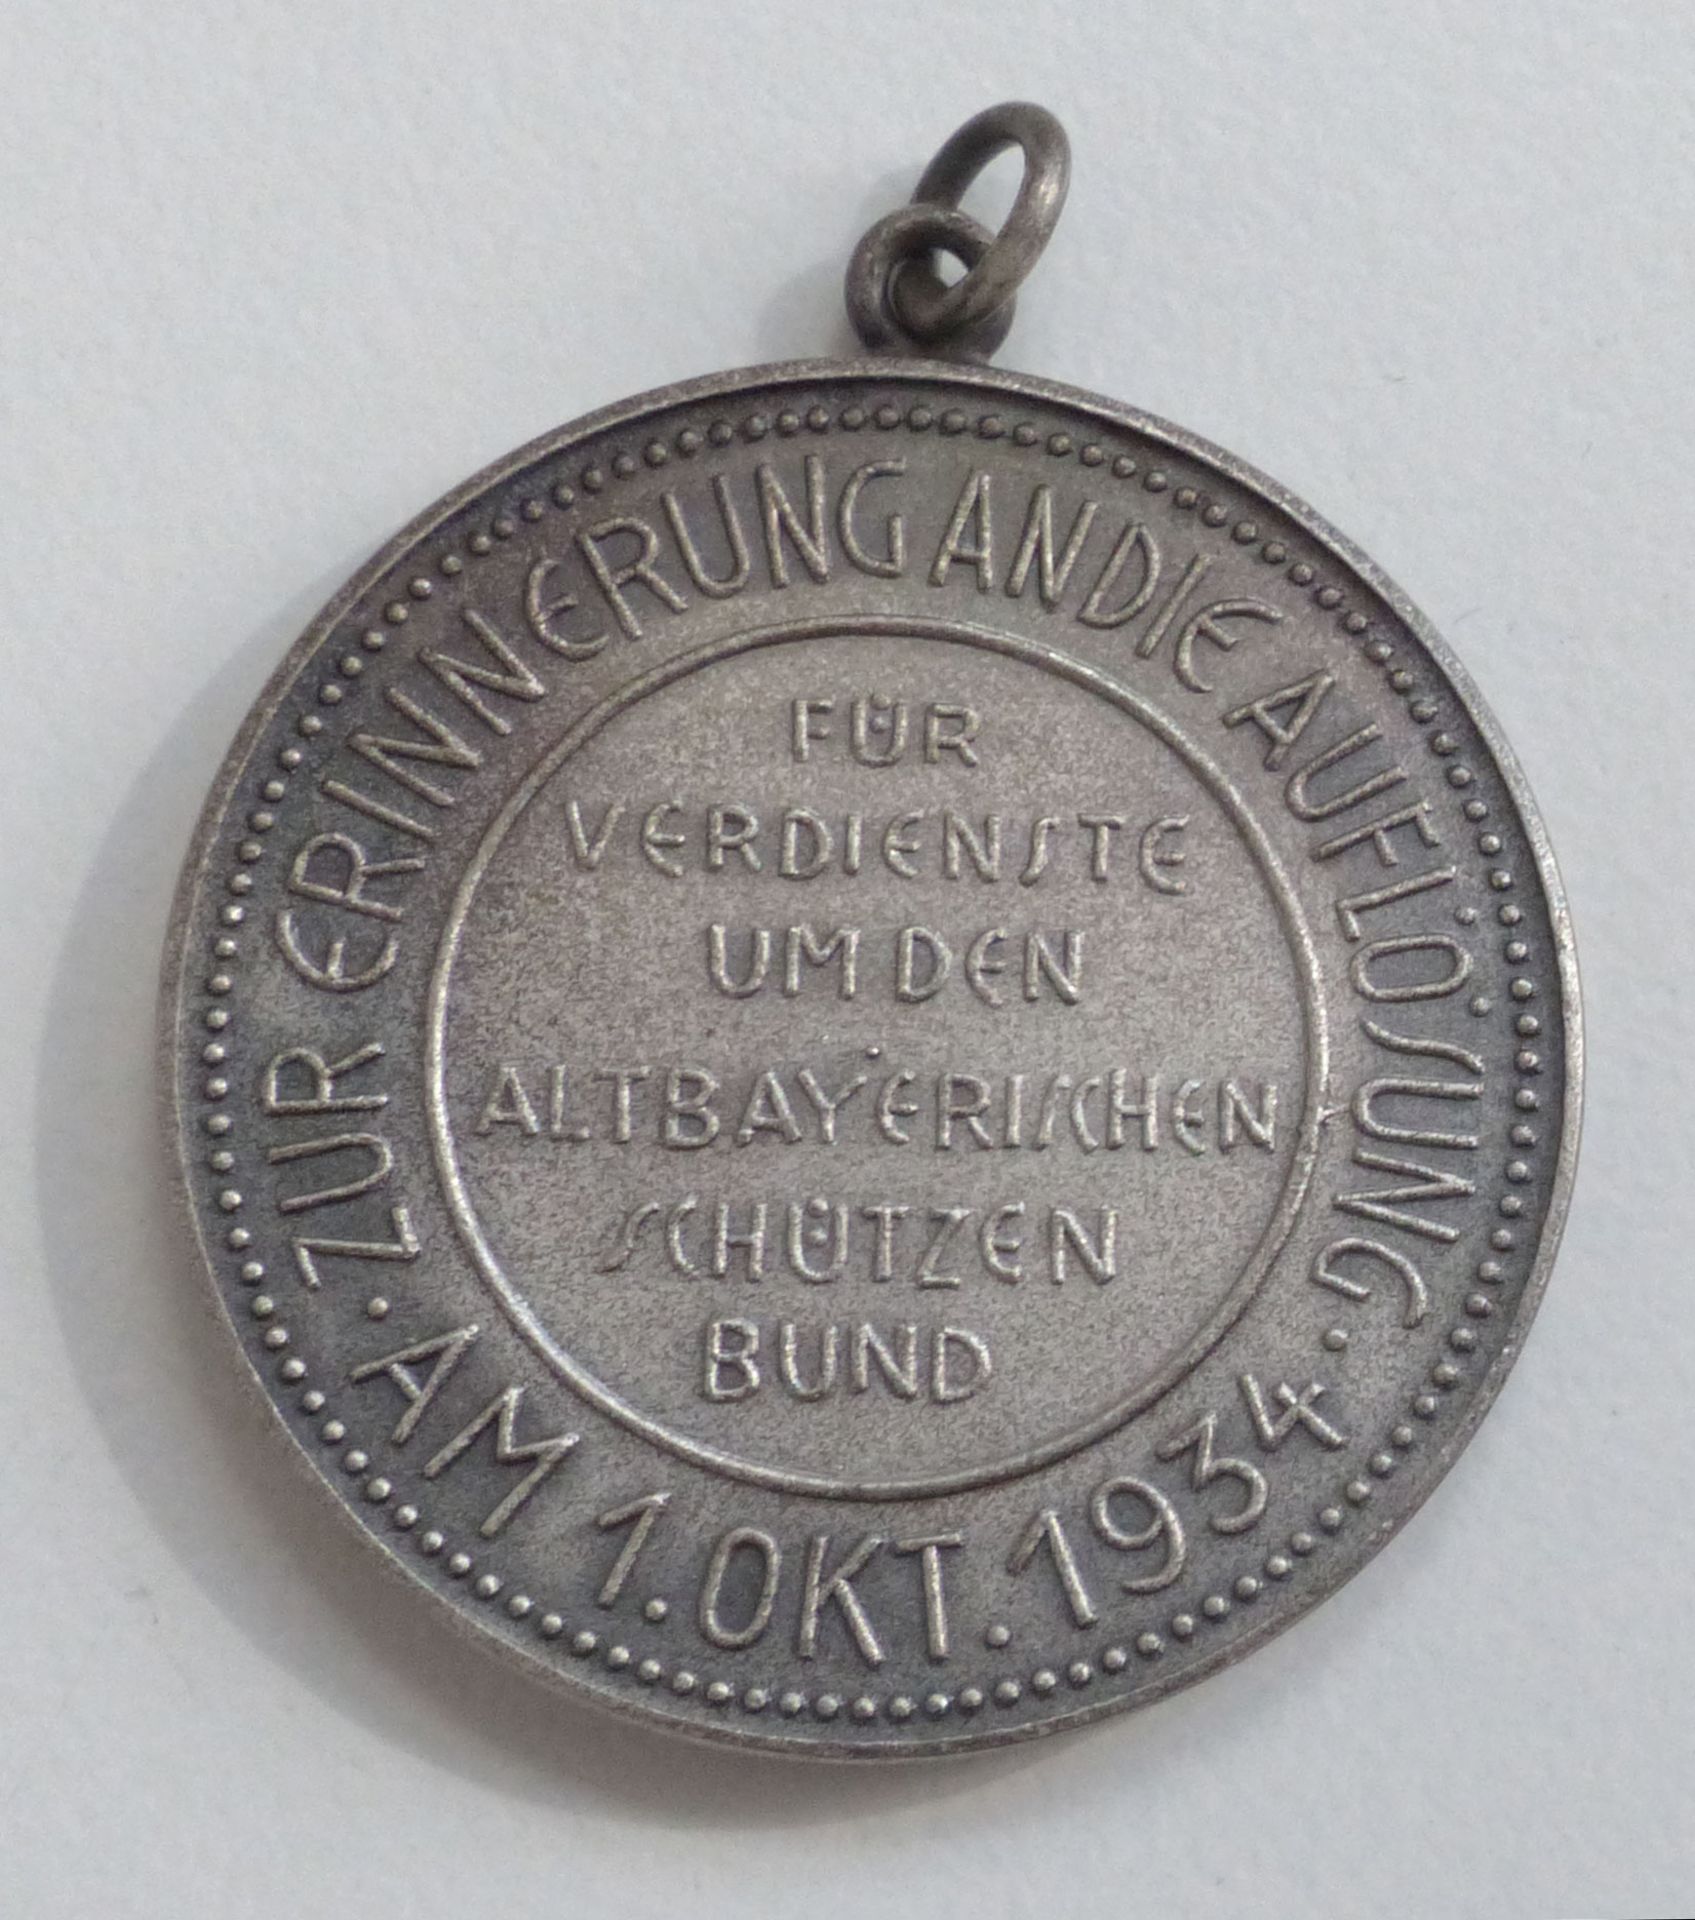 Schützen Medaille für Verdienste um den altbayrischen Schützenbund 1954 silber ca. 30 mm Durchm. I-